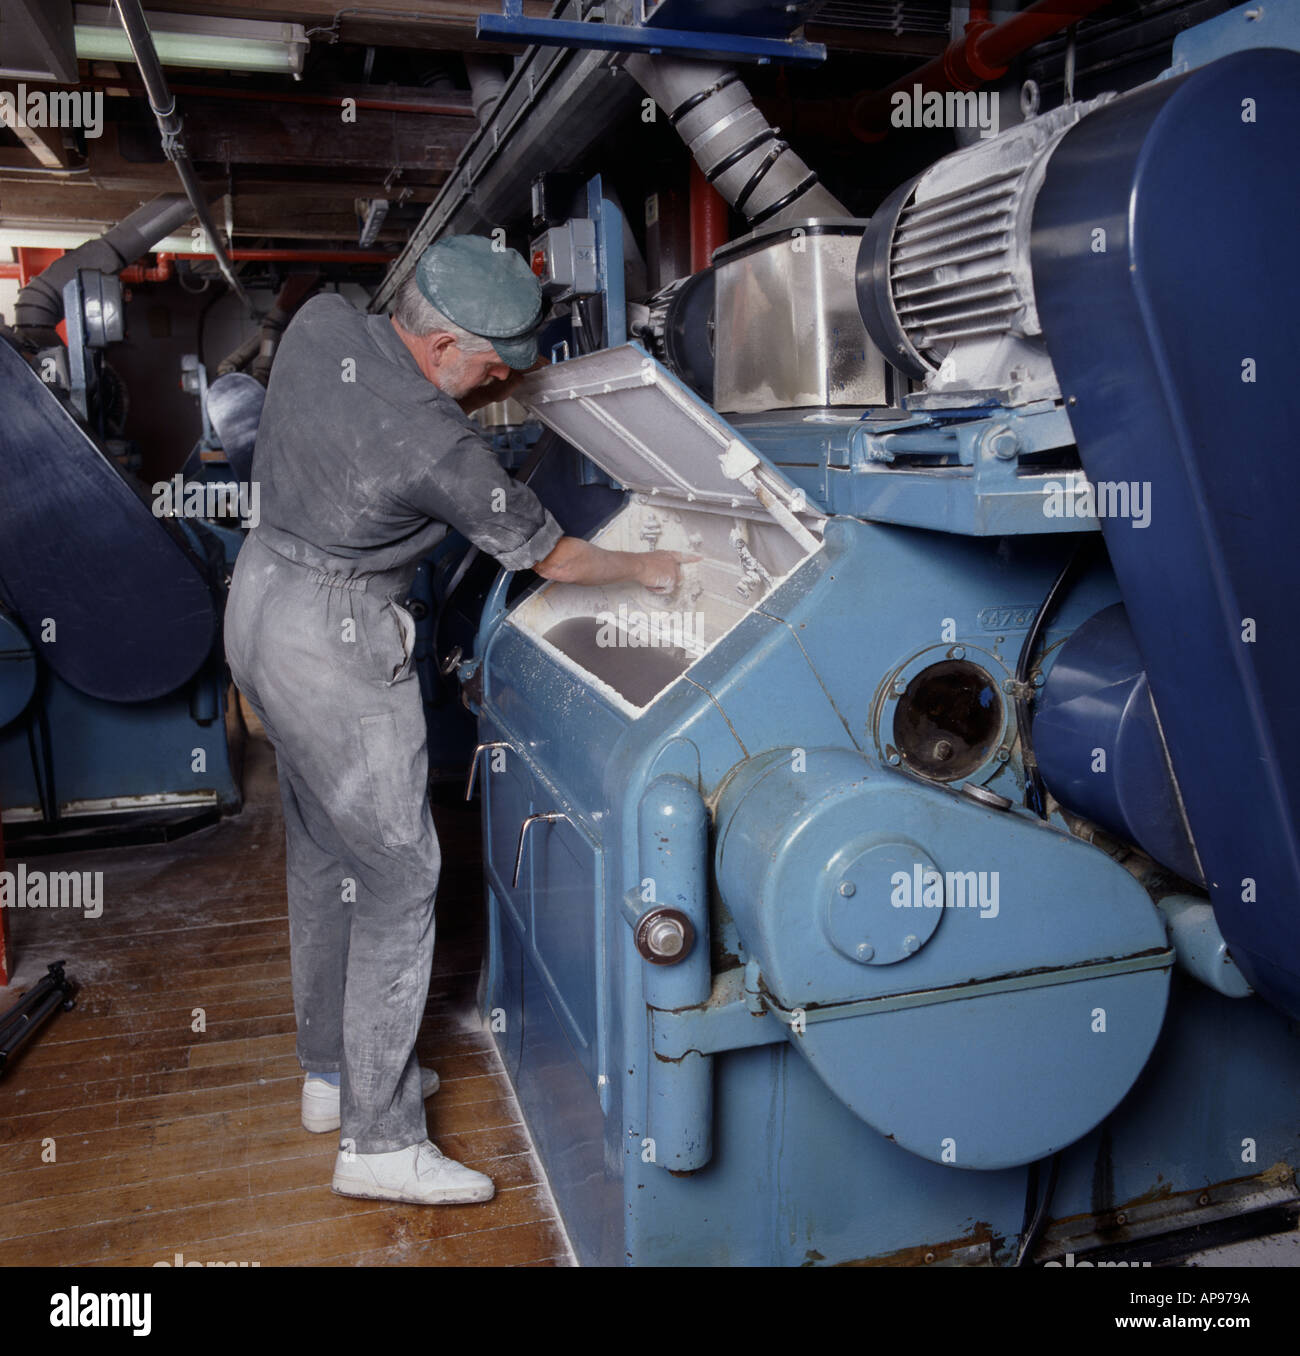 Homme travaillant à la mouture du grain au moulin de Clarks Angleterre Wantage Banque D'Images